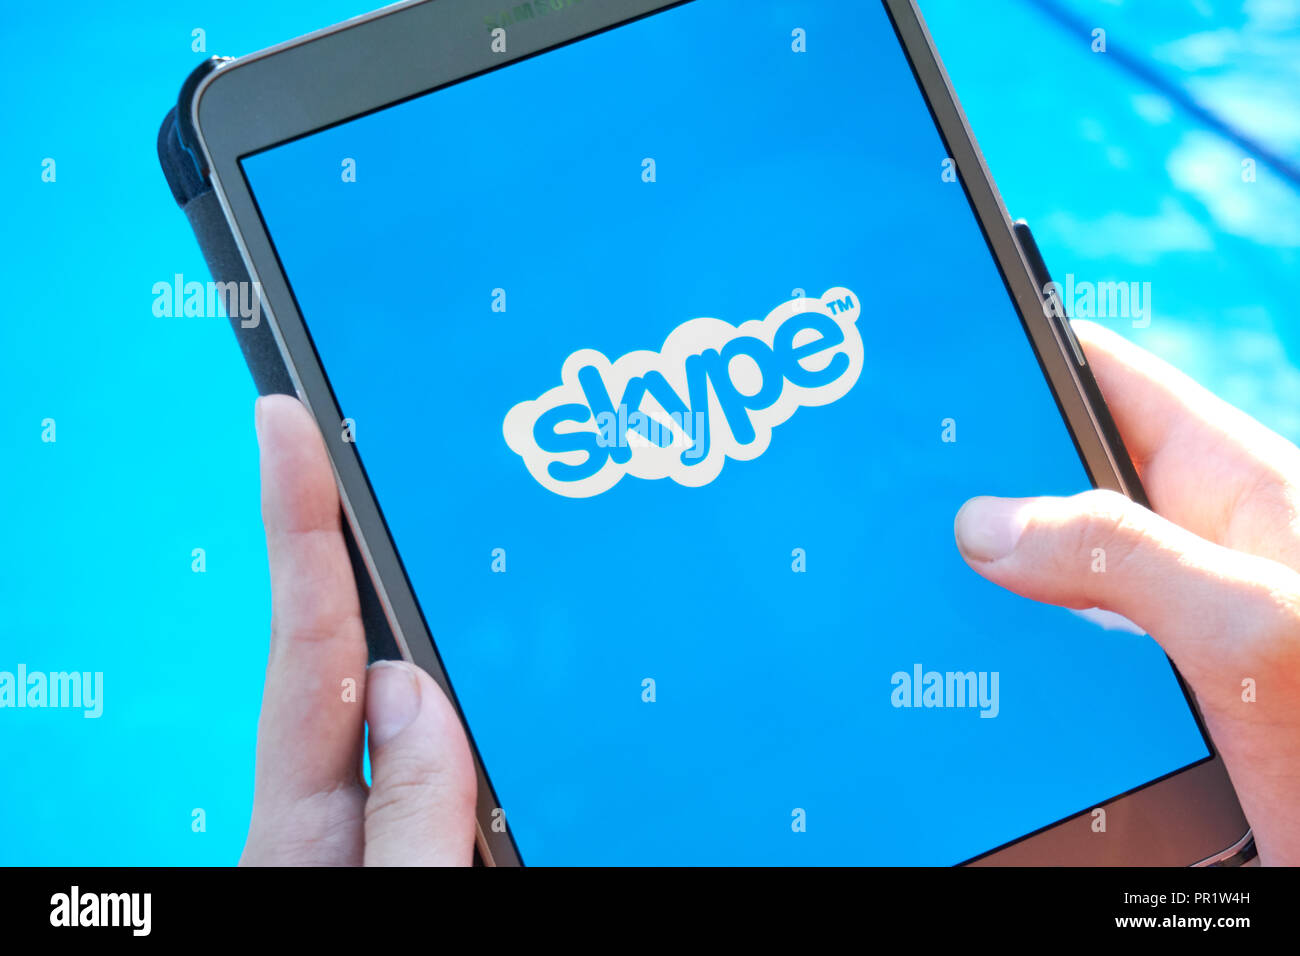 skype freezing up computer